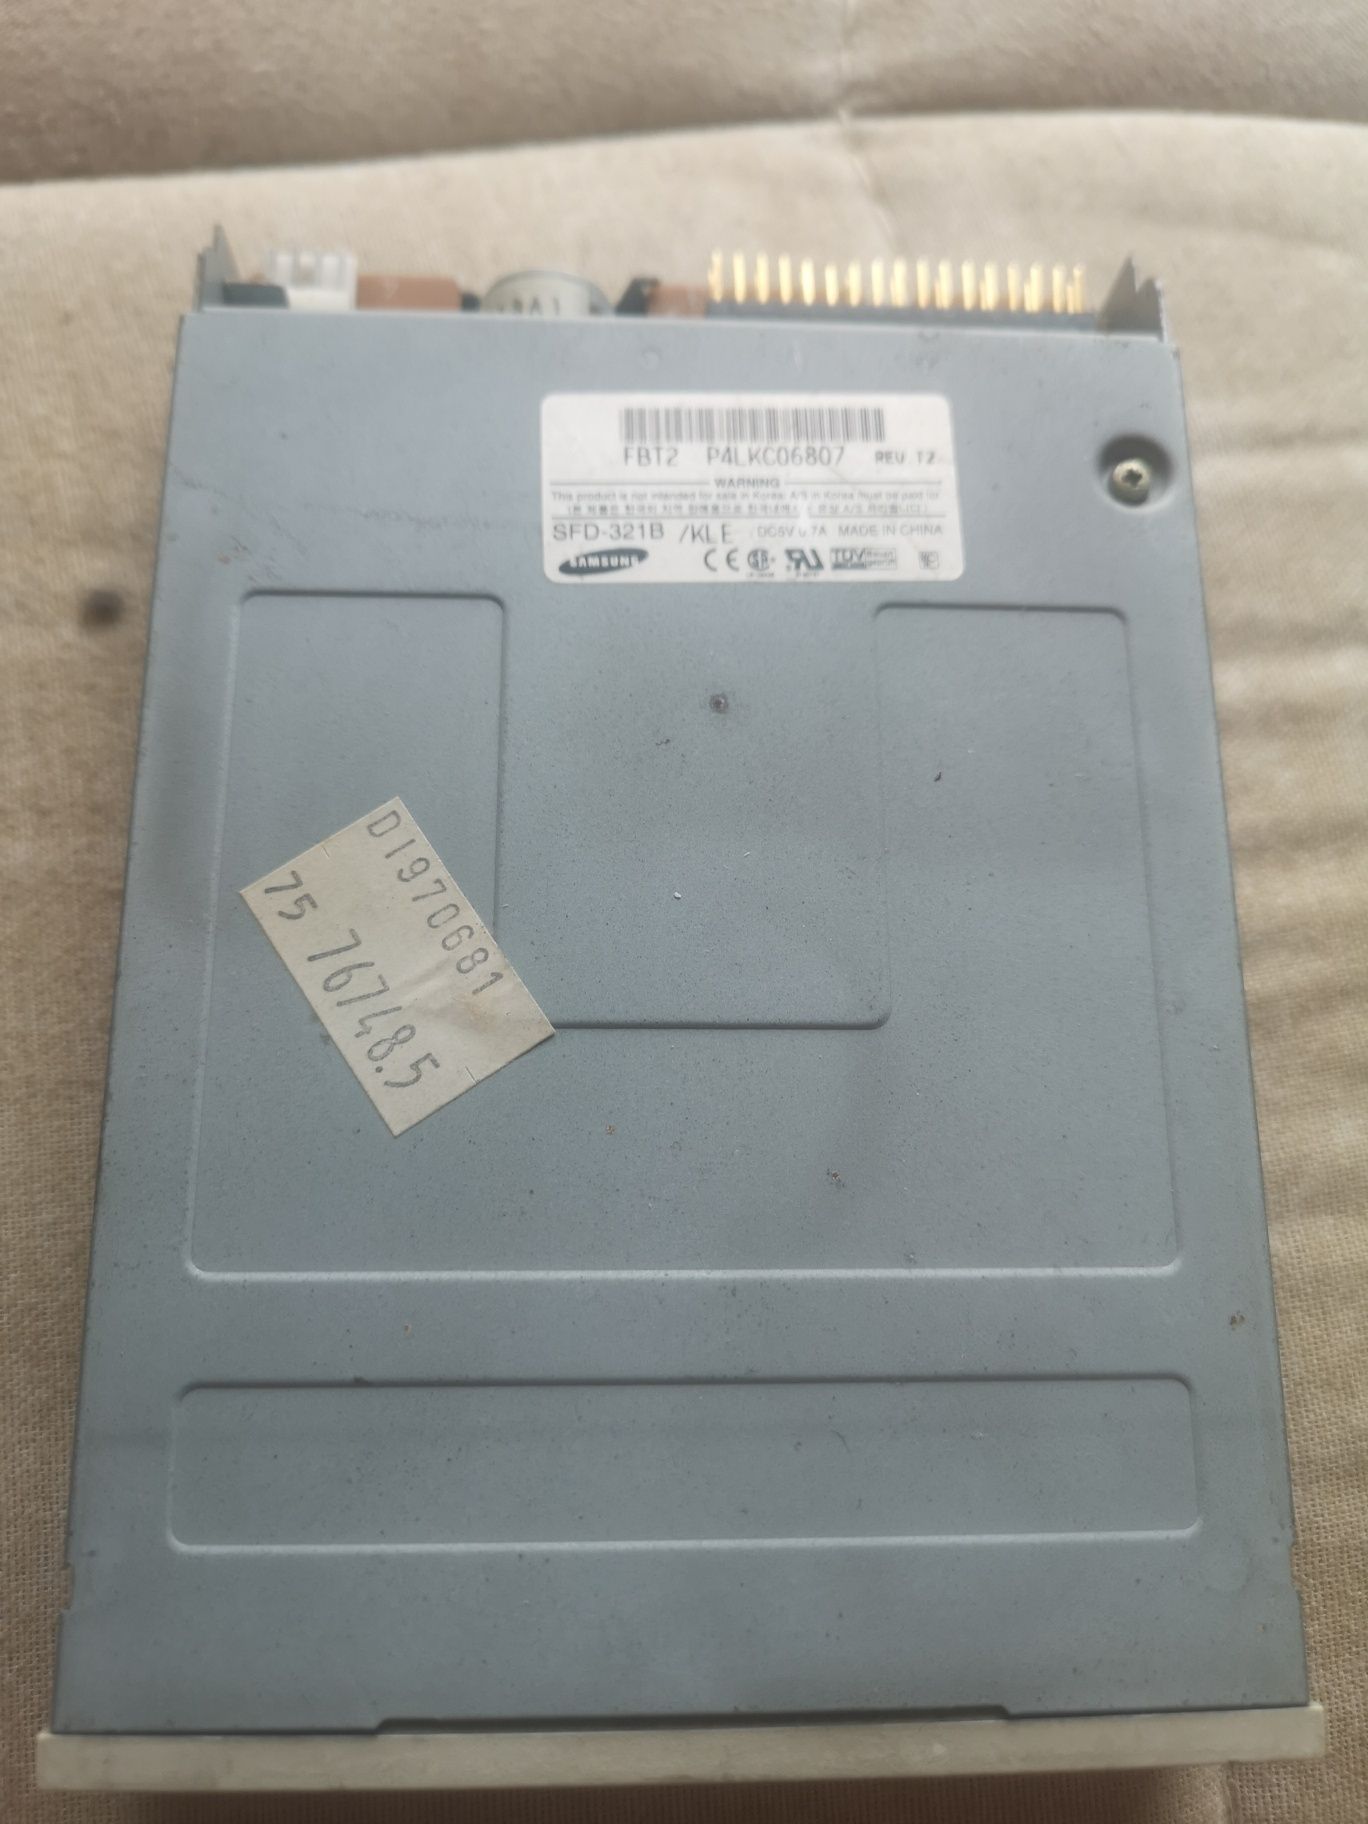 Leitor de floppy disk